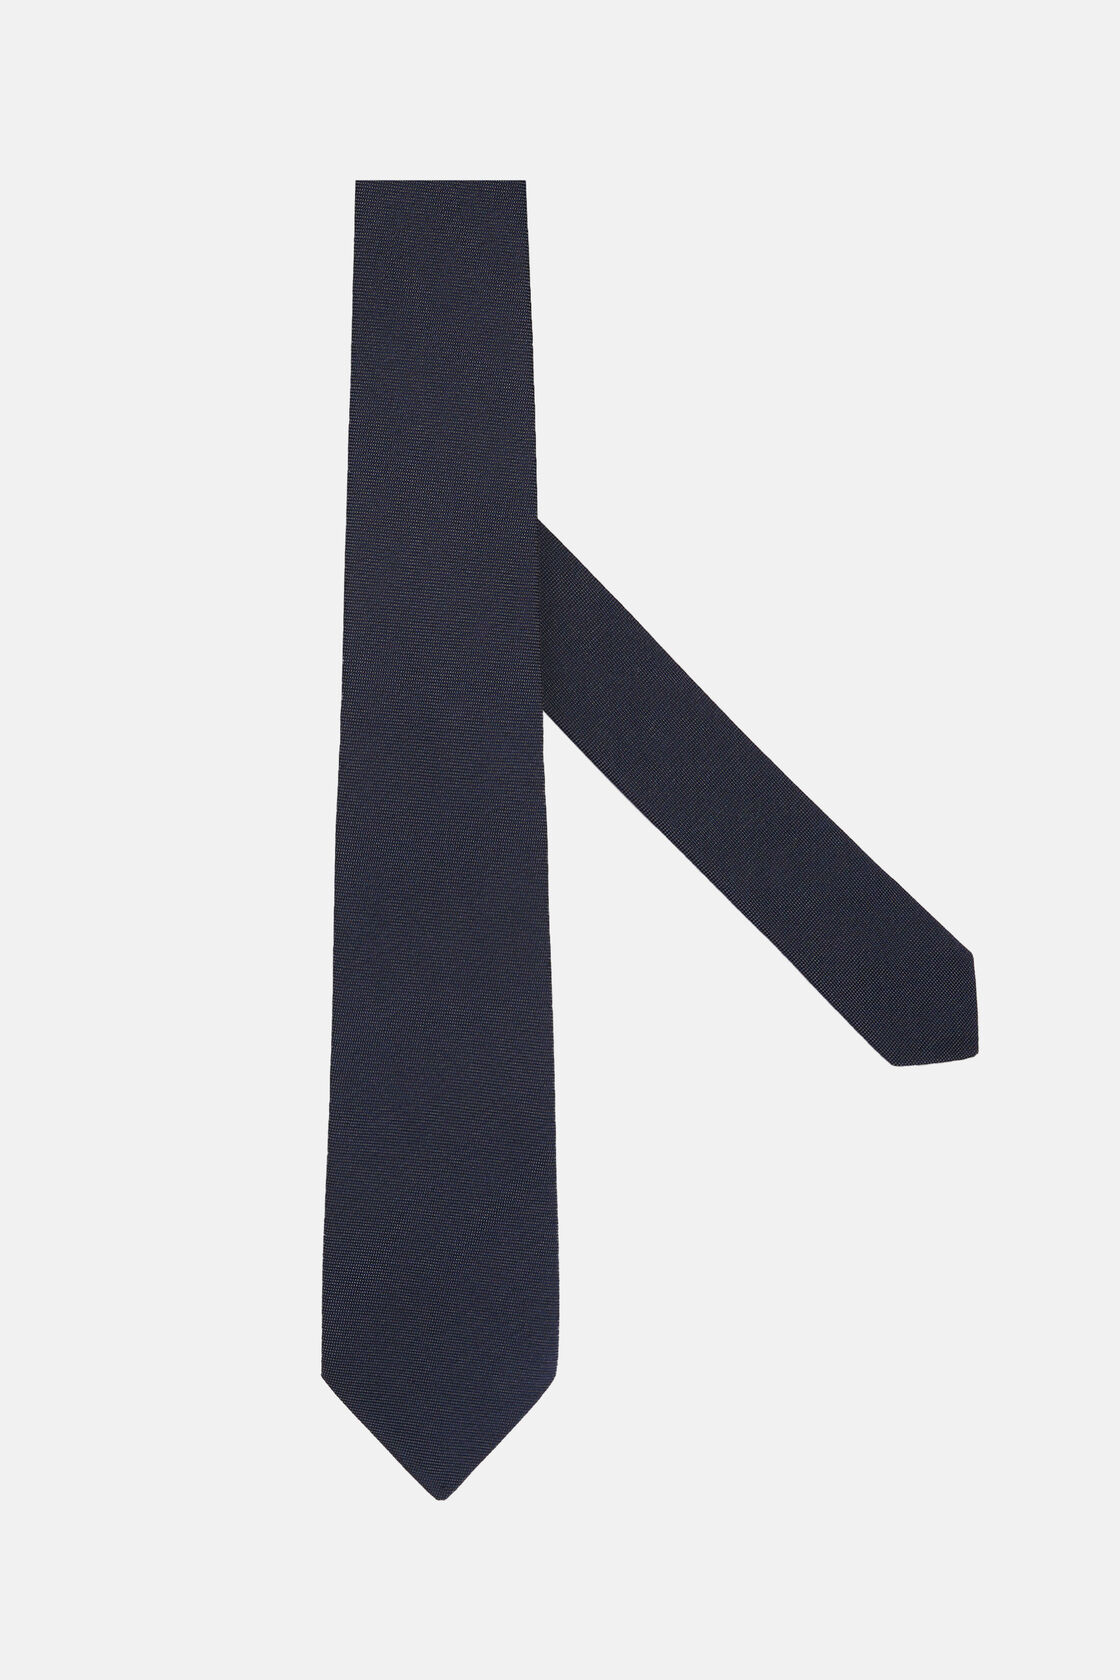 Micro Textured Silk Blend Tie, Navy blue, hi-res